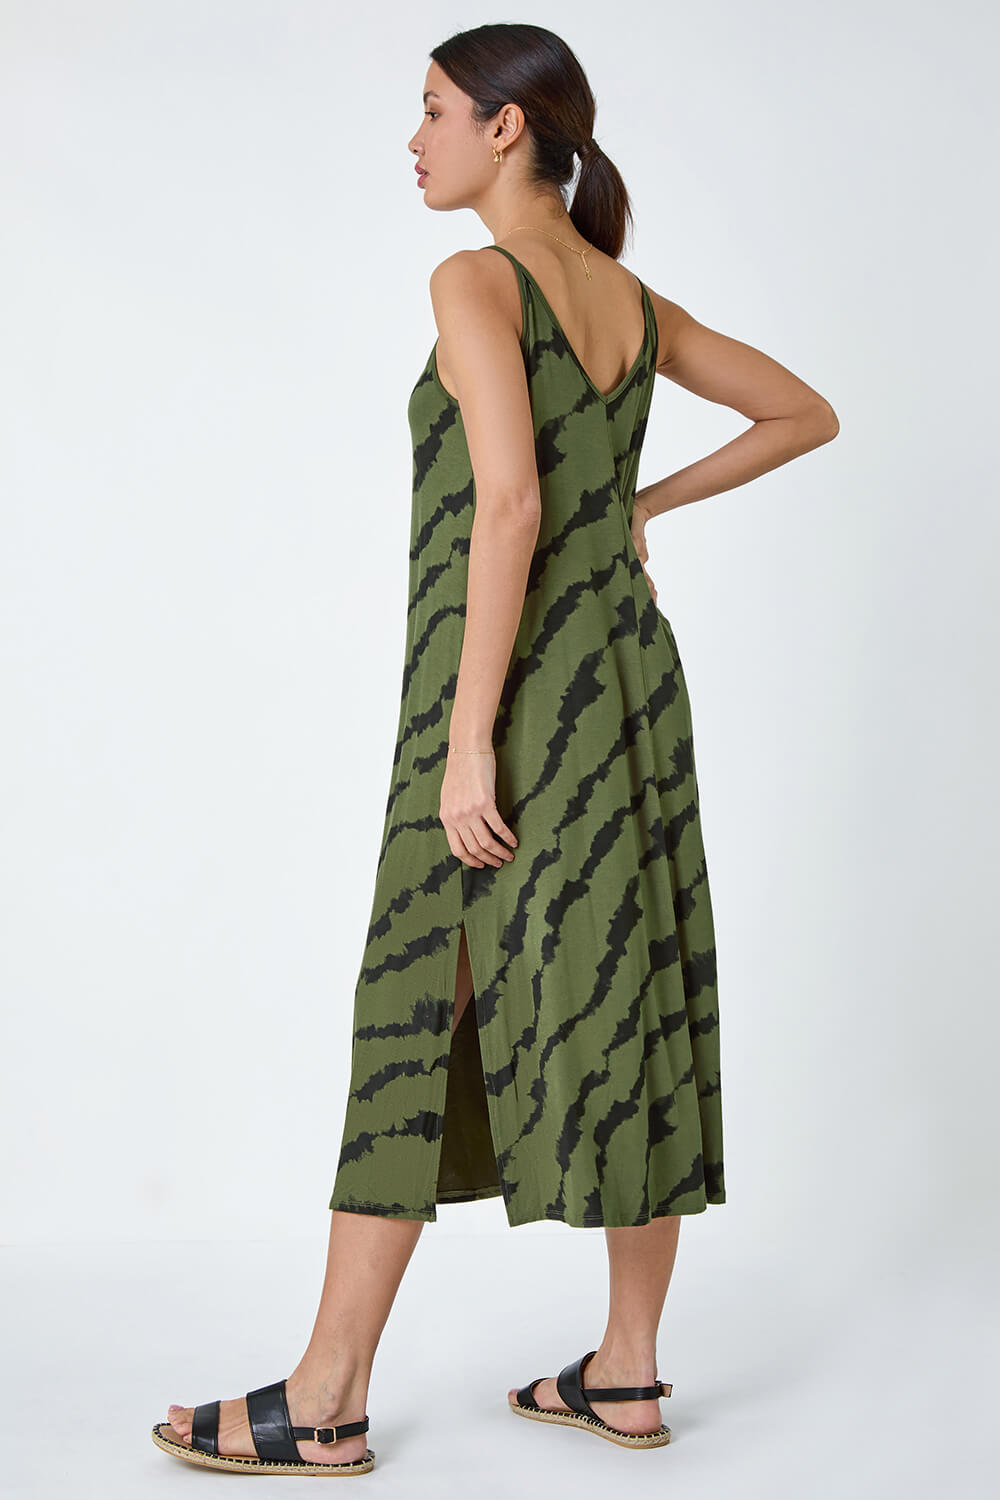 KHAKI Tie Dye Stretch Jersey Pocket Midi Dress, Image 3 of 5